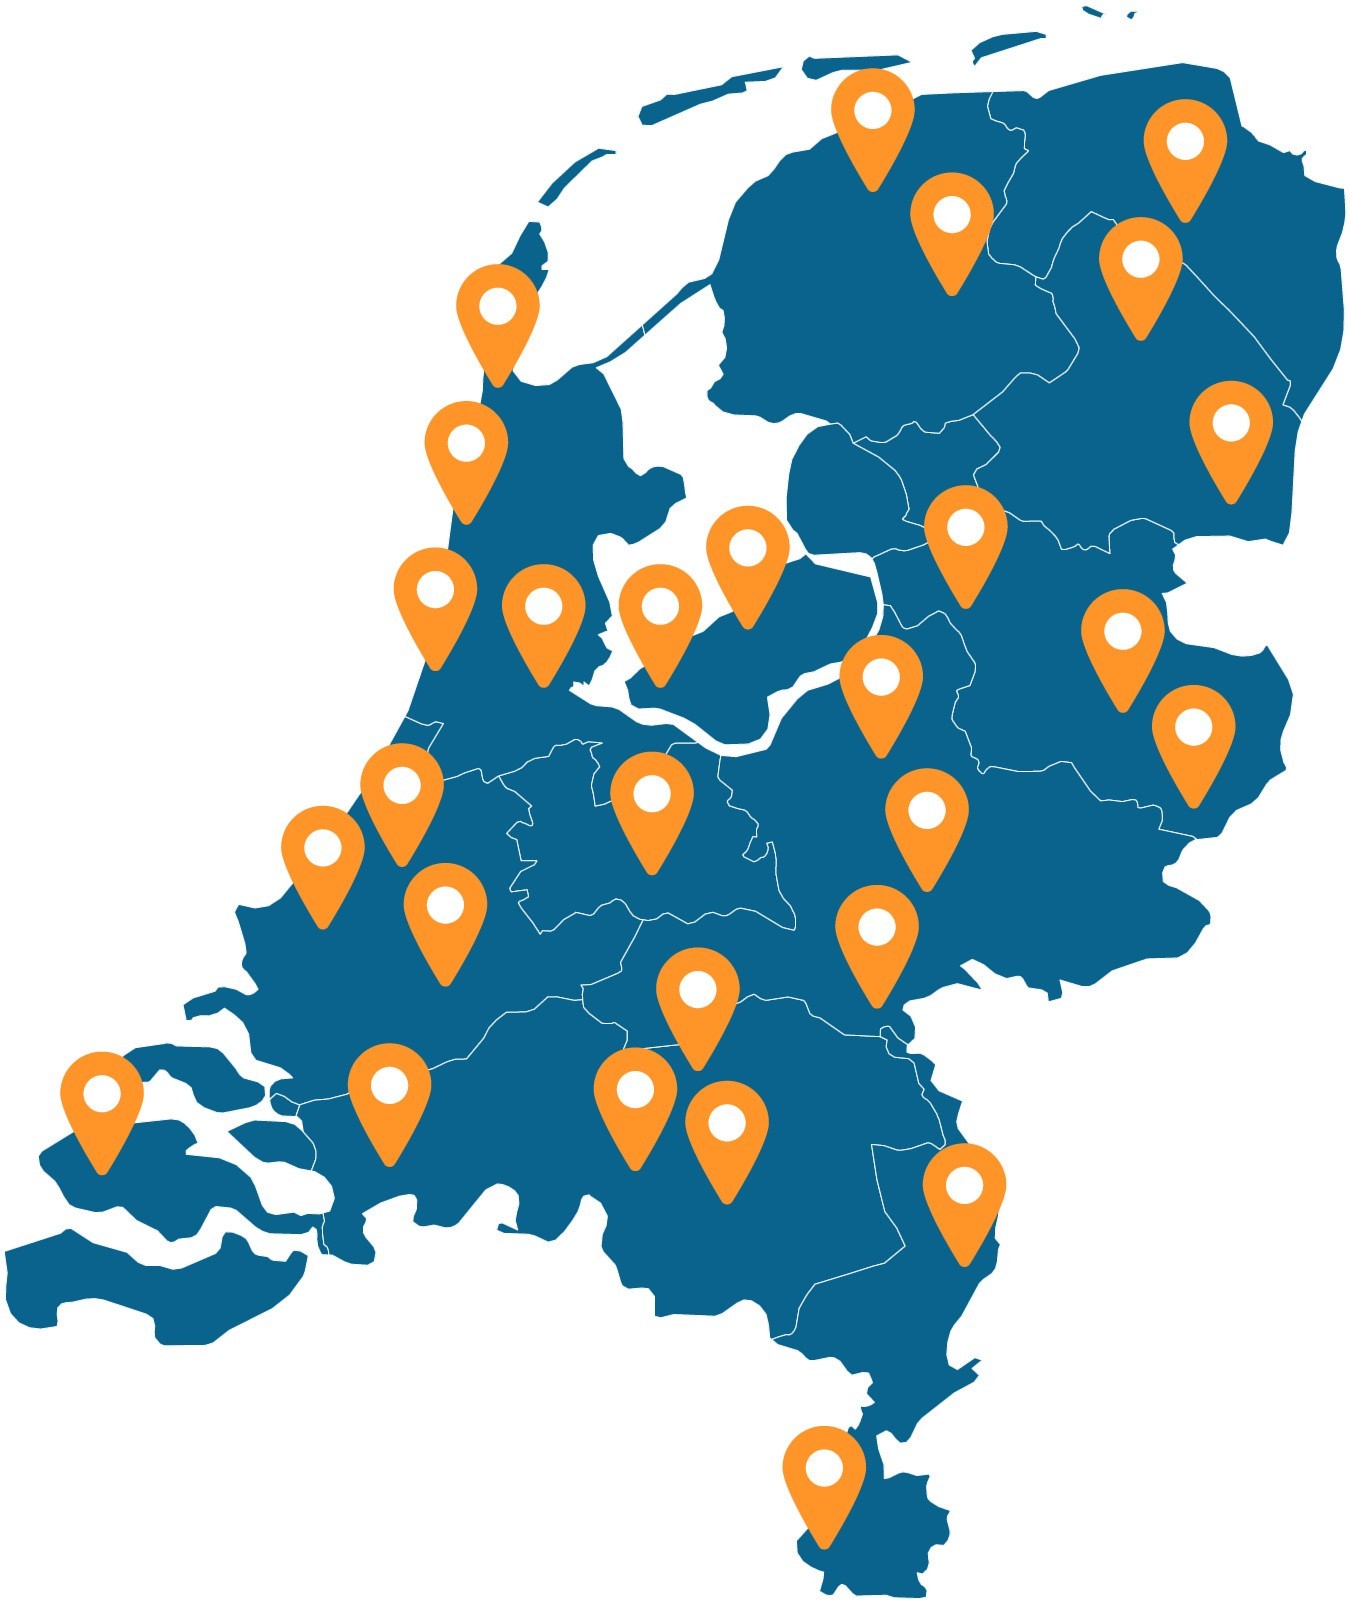 Plattegrond locaties in nederland